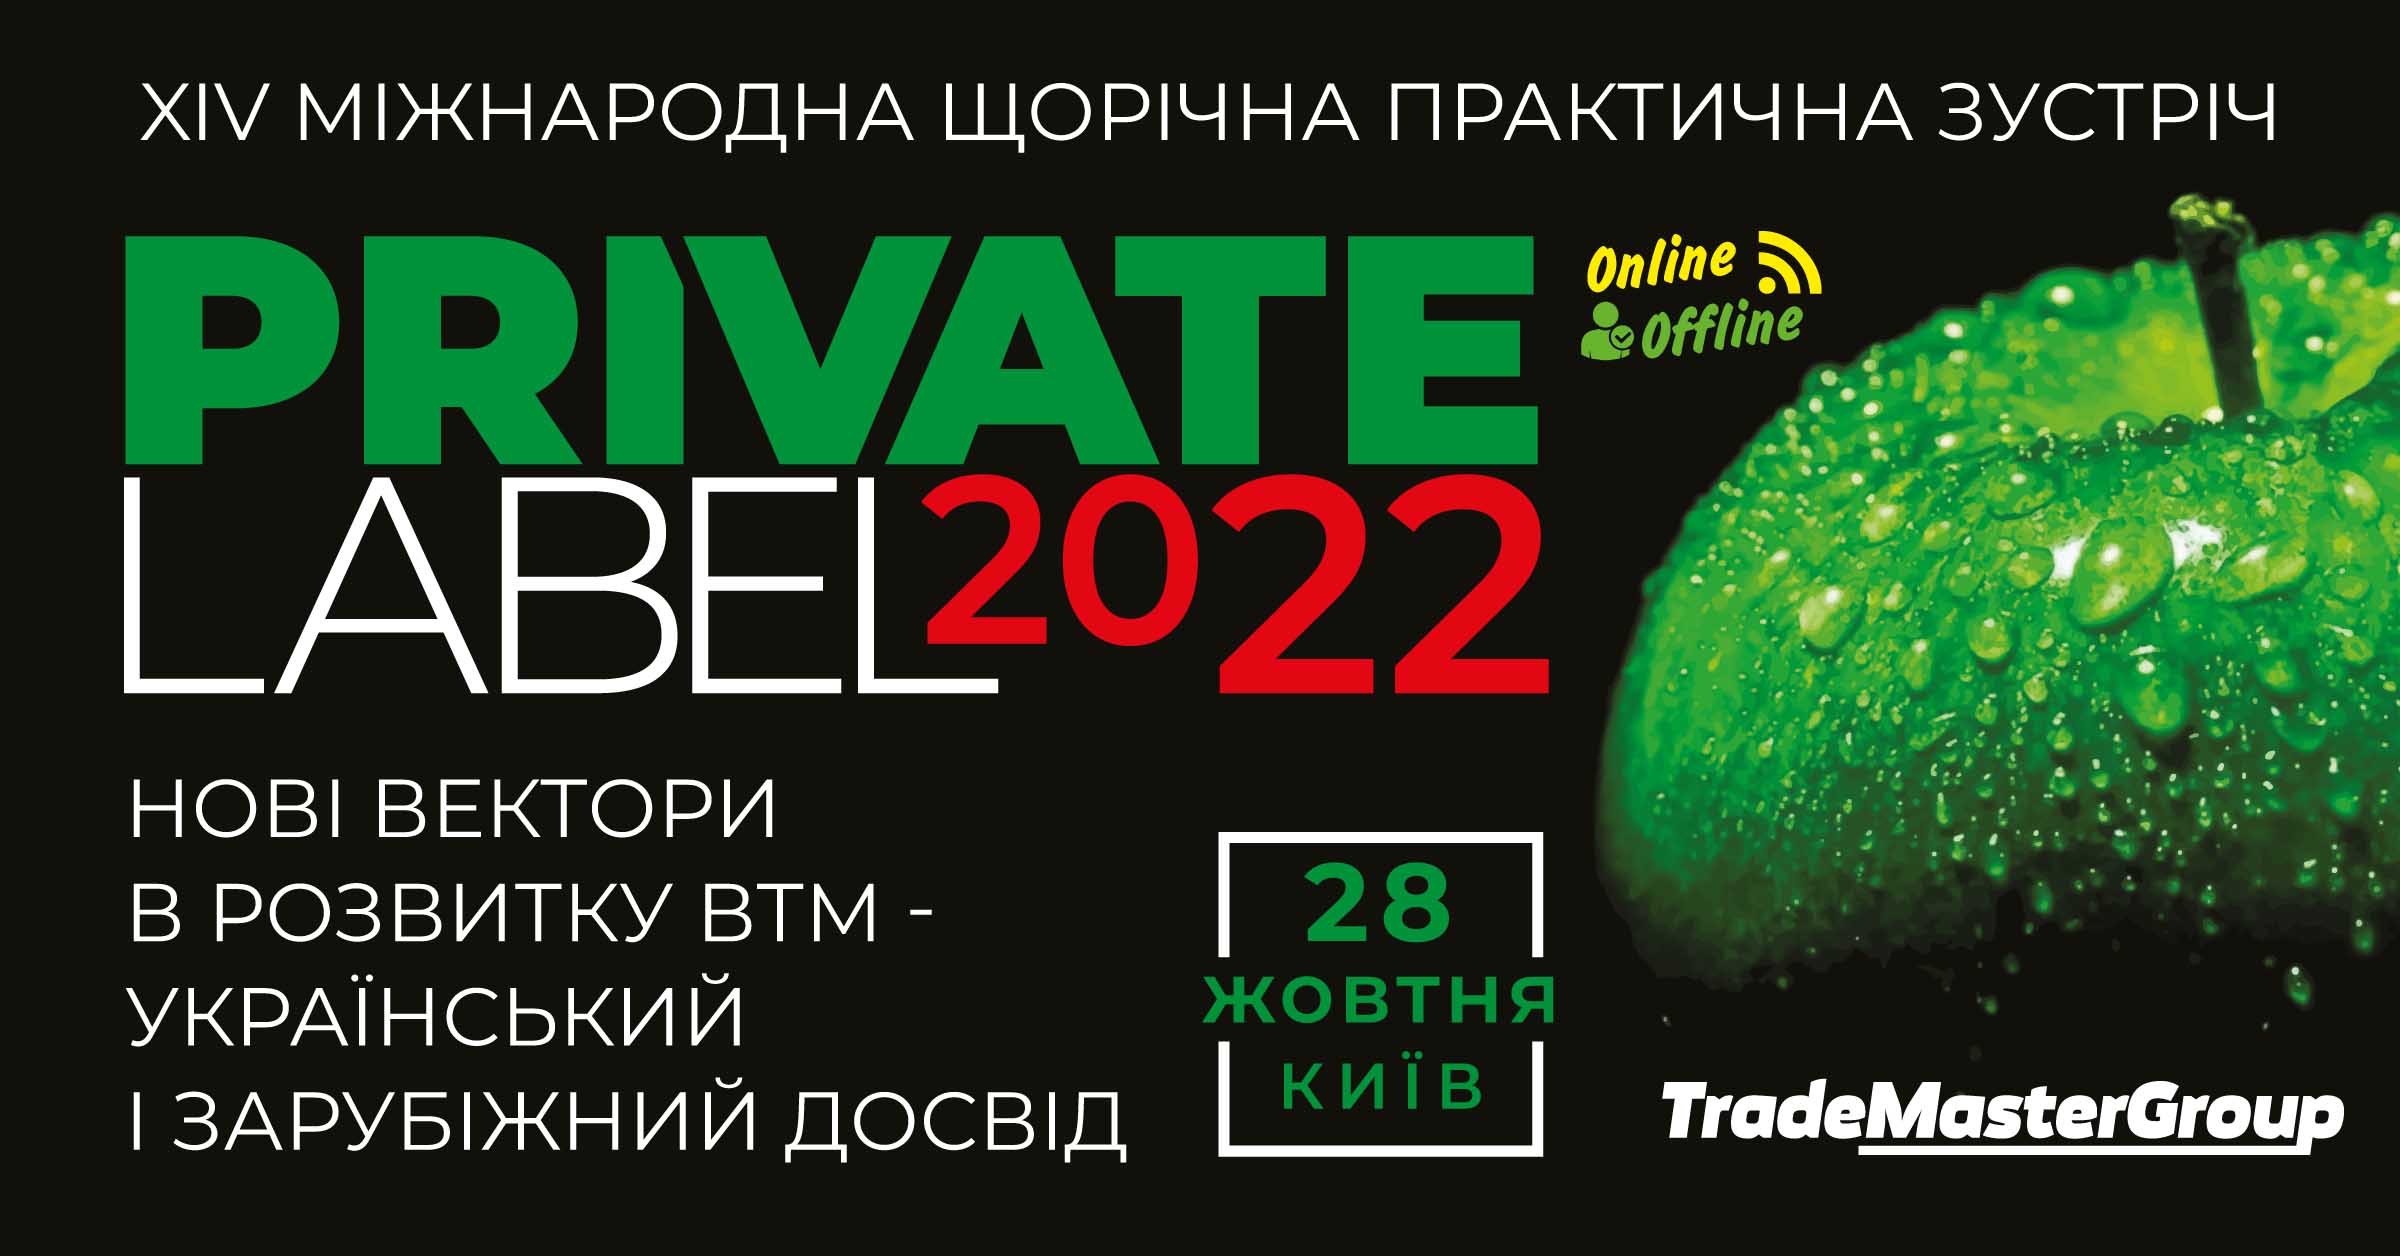 PrivateLabel-2022: Нові вектори у розвитку ВТМ - український та зарубіжний досвід